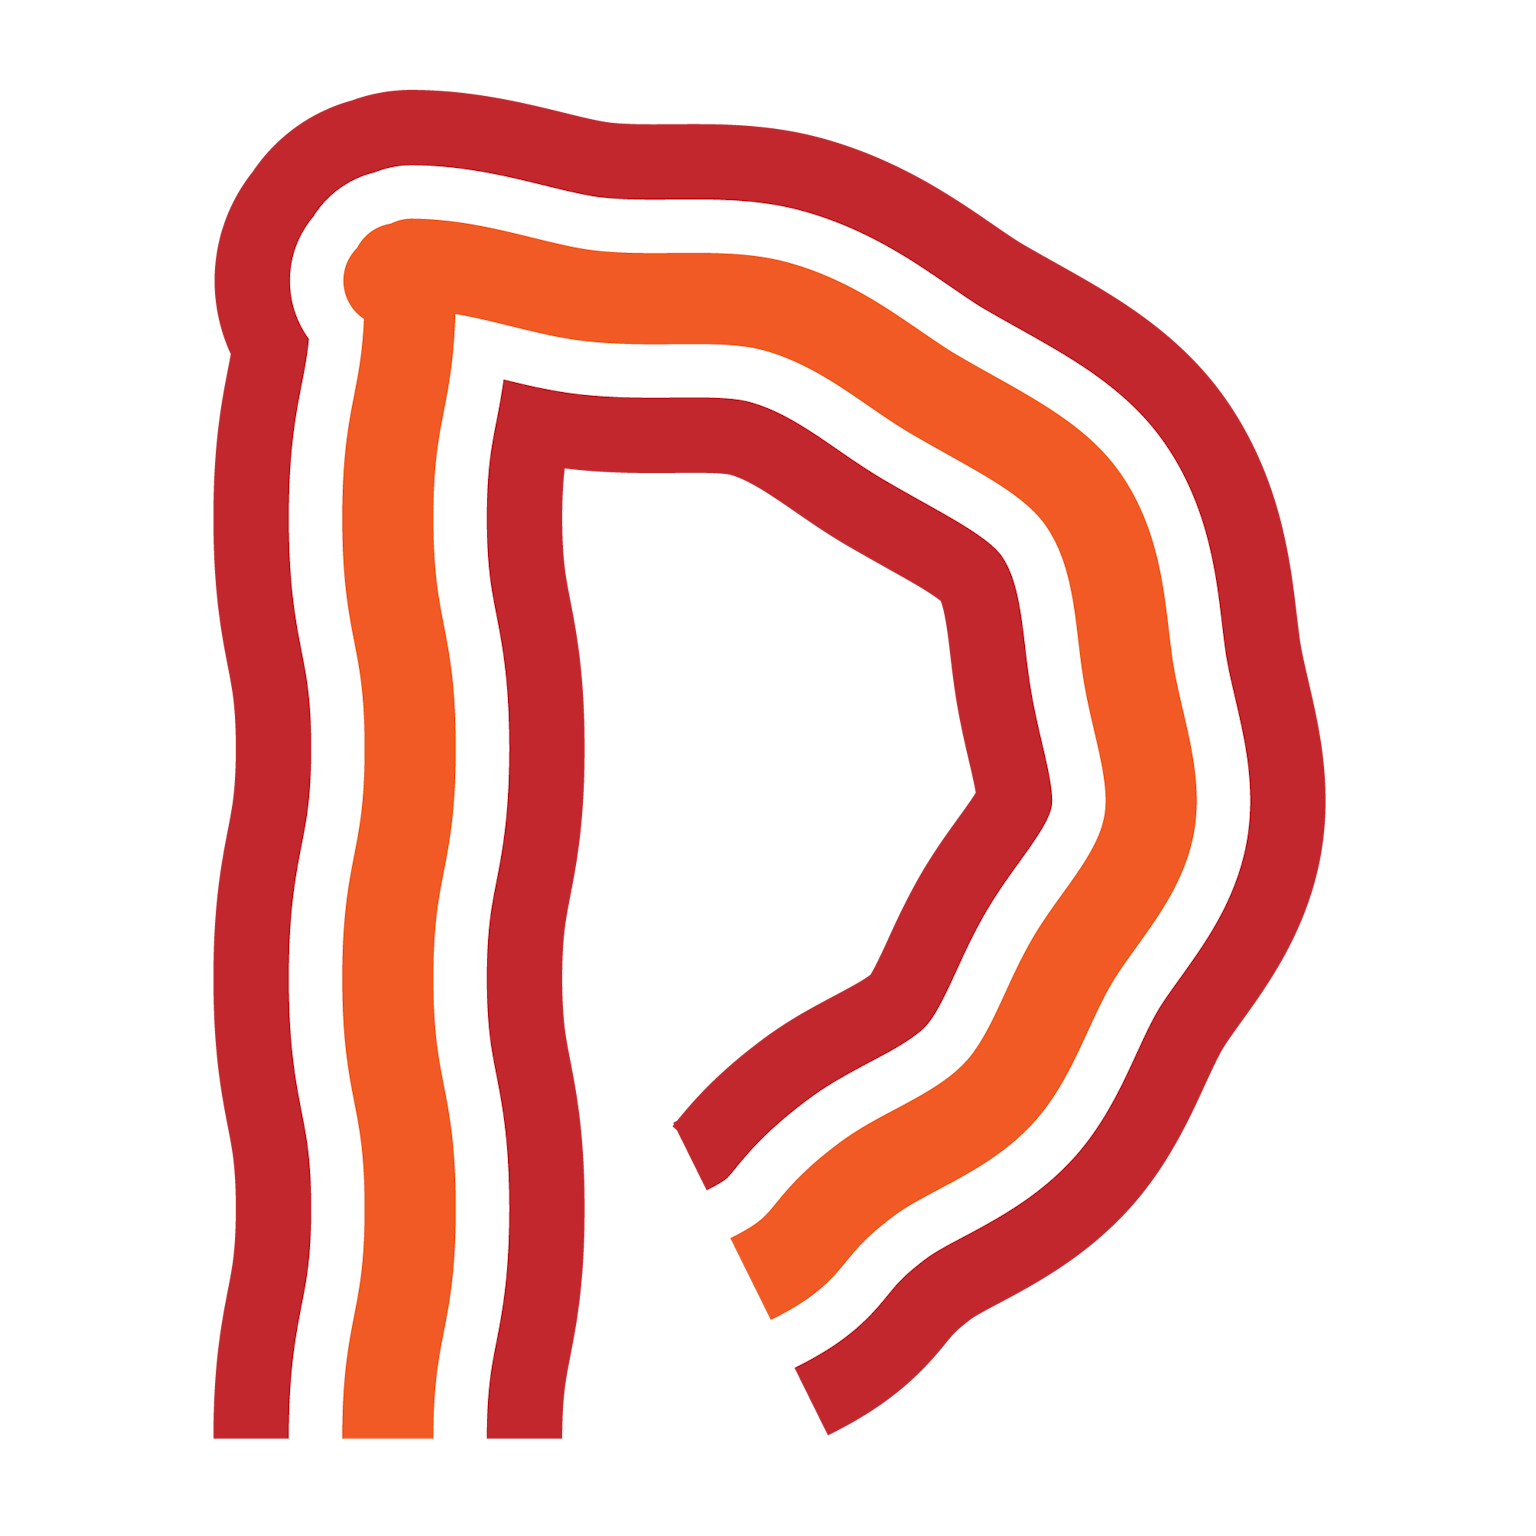 The Developer Bacon logo